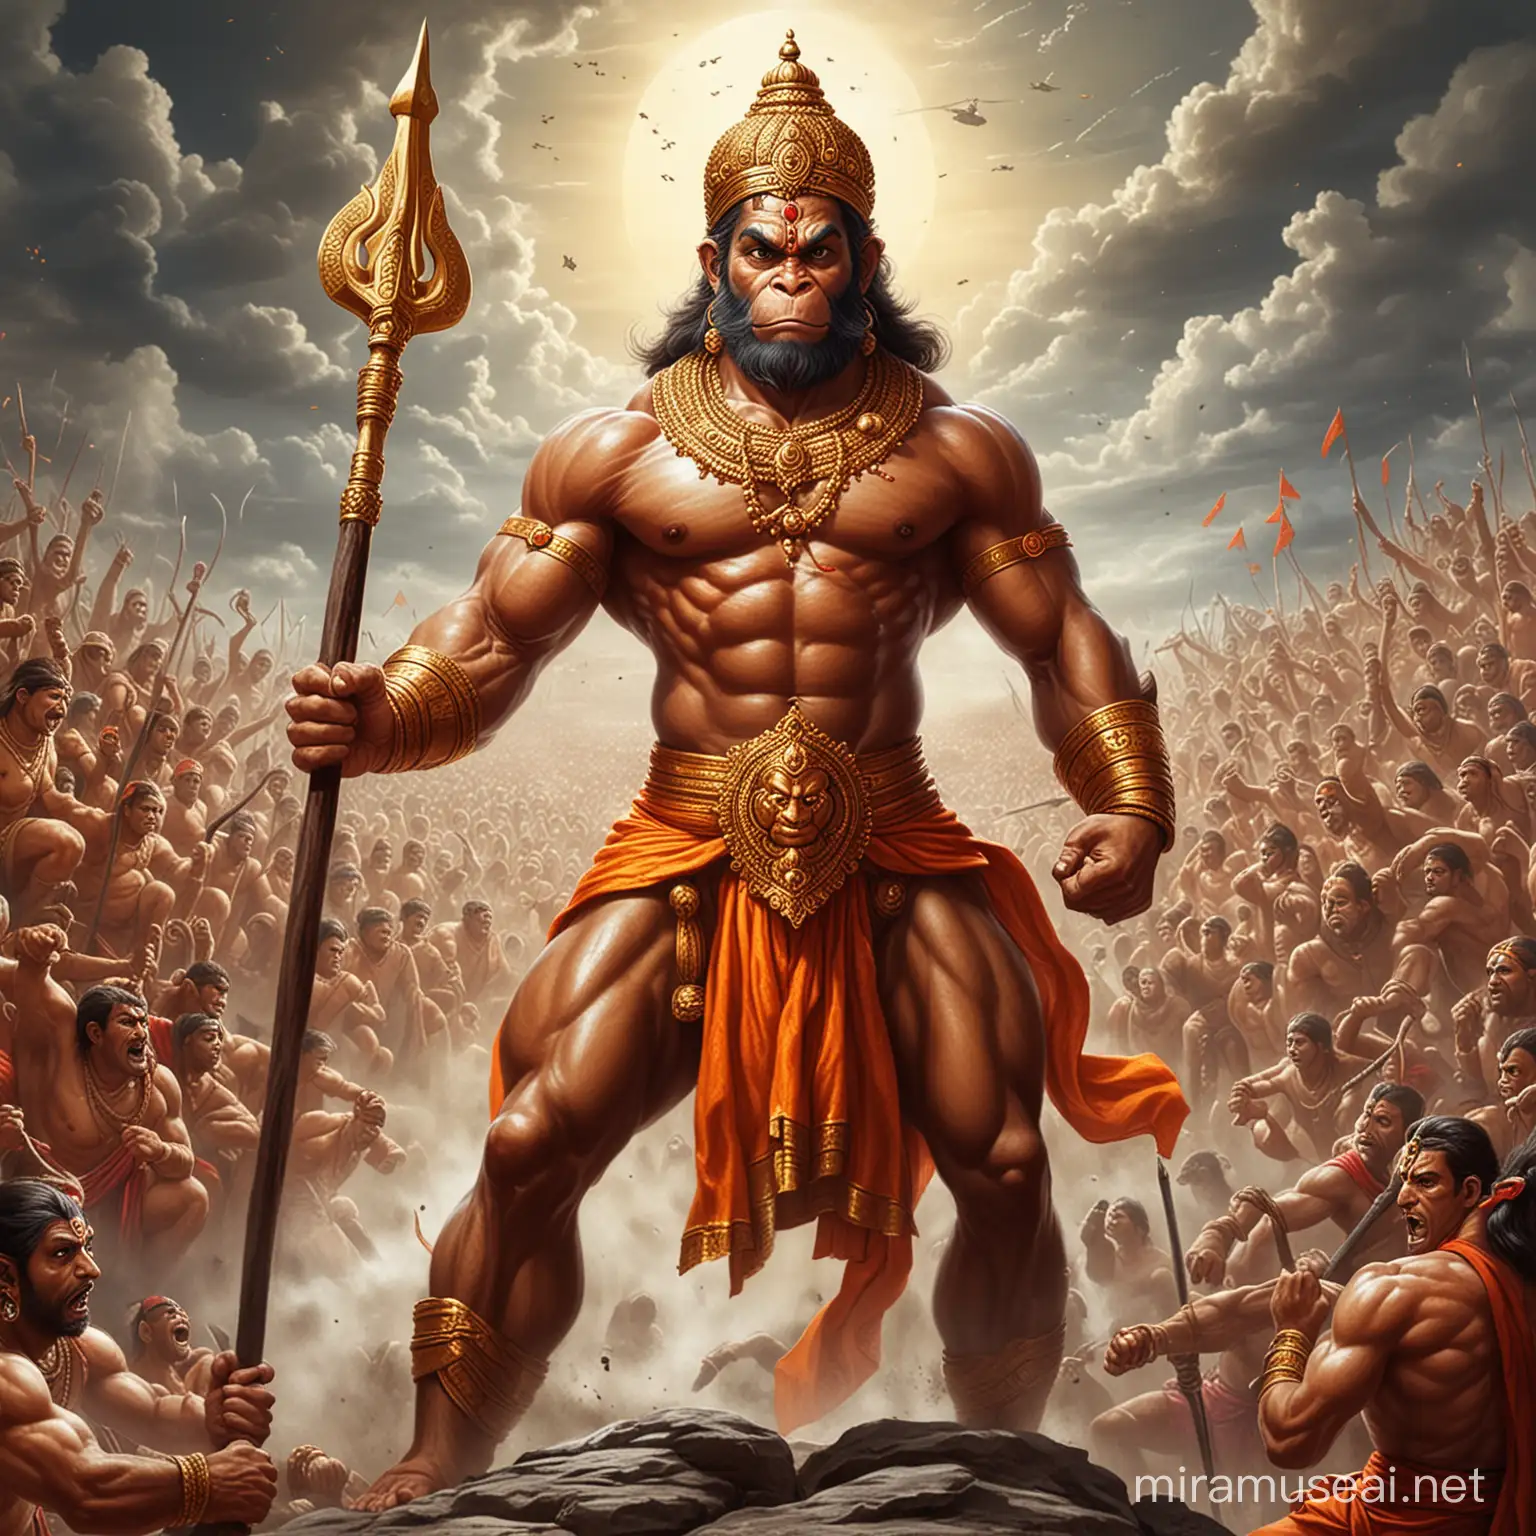 Lord Hanuman Ready for Battle Powerful Hindu Deity in Battle Garb